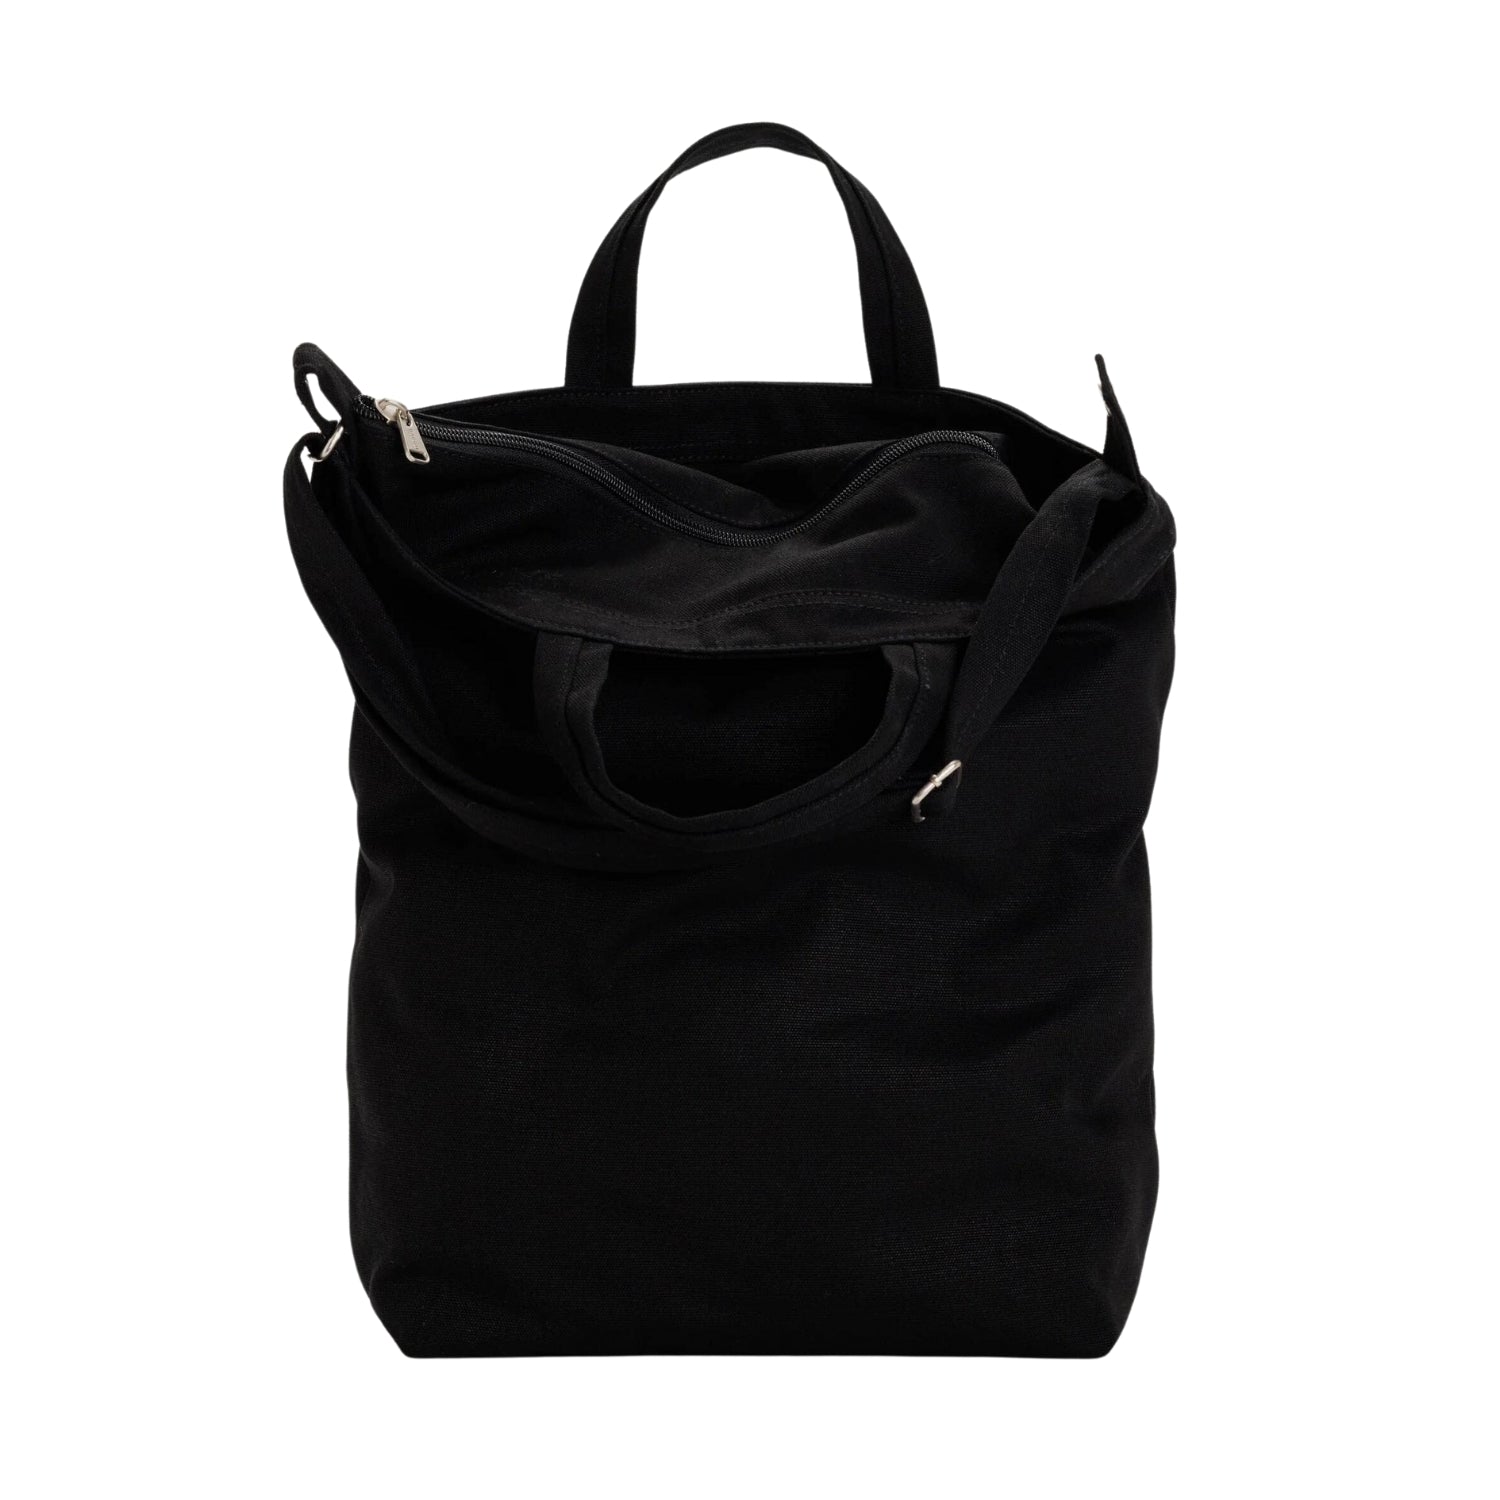 Baggu Zip Duck Bag in Black